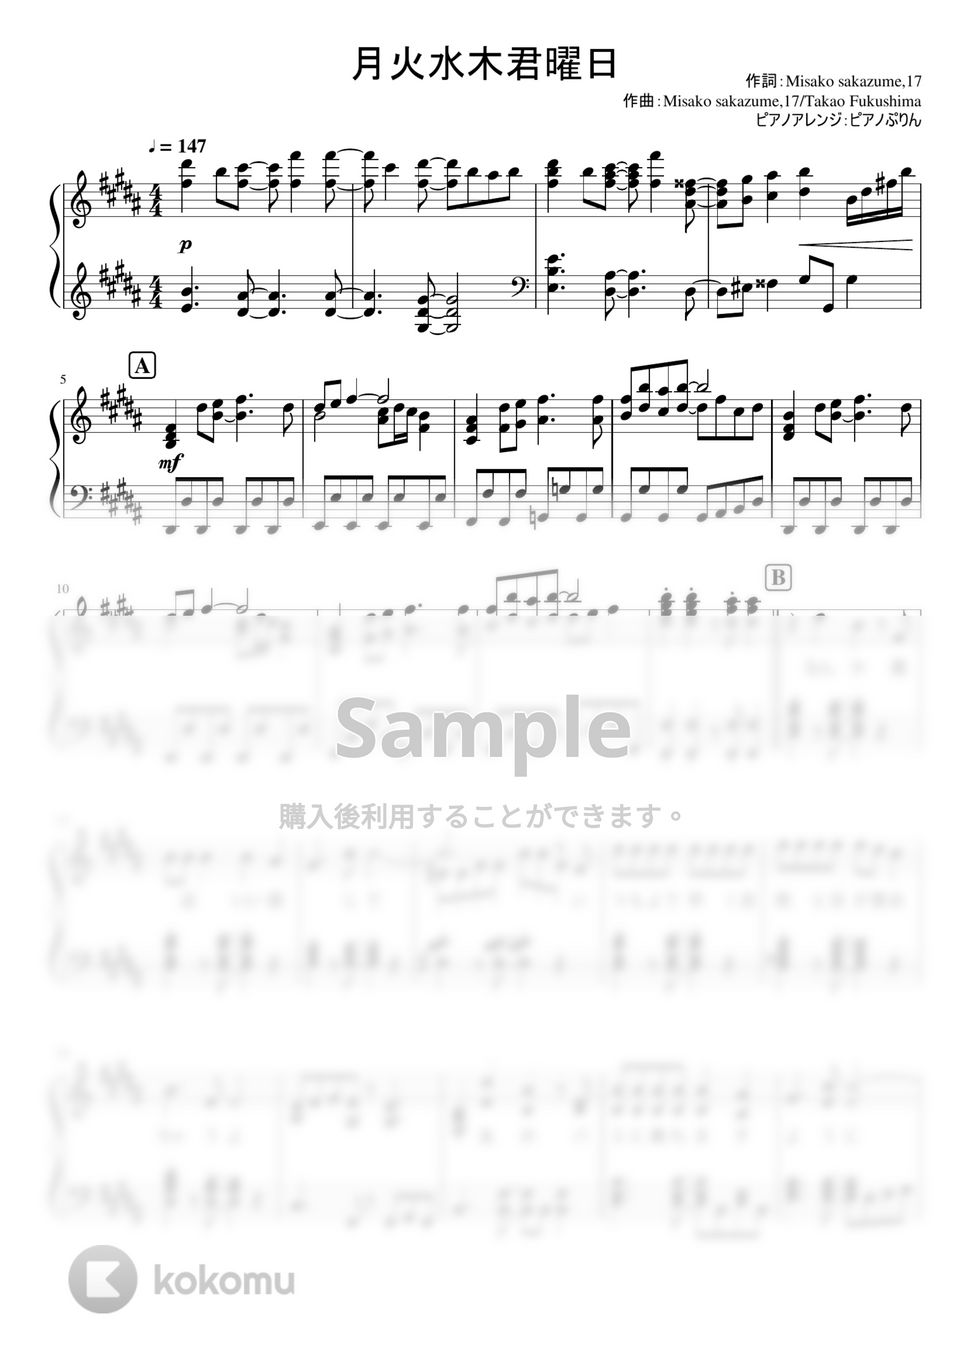 なにわ男子 - 月火水木君曜日 (1stアルバム「1st Love」収録曲。) by ピアノぷりん